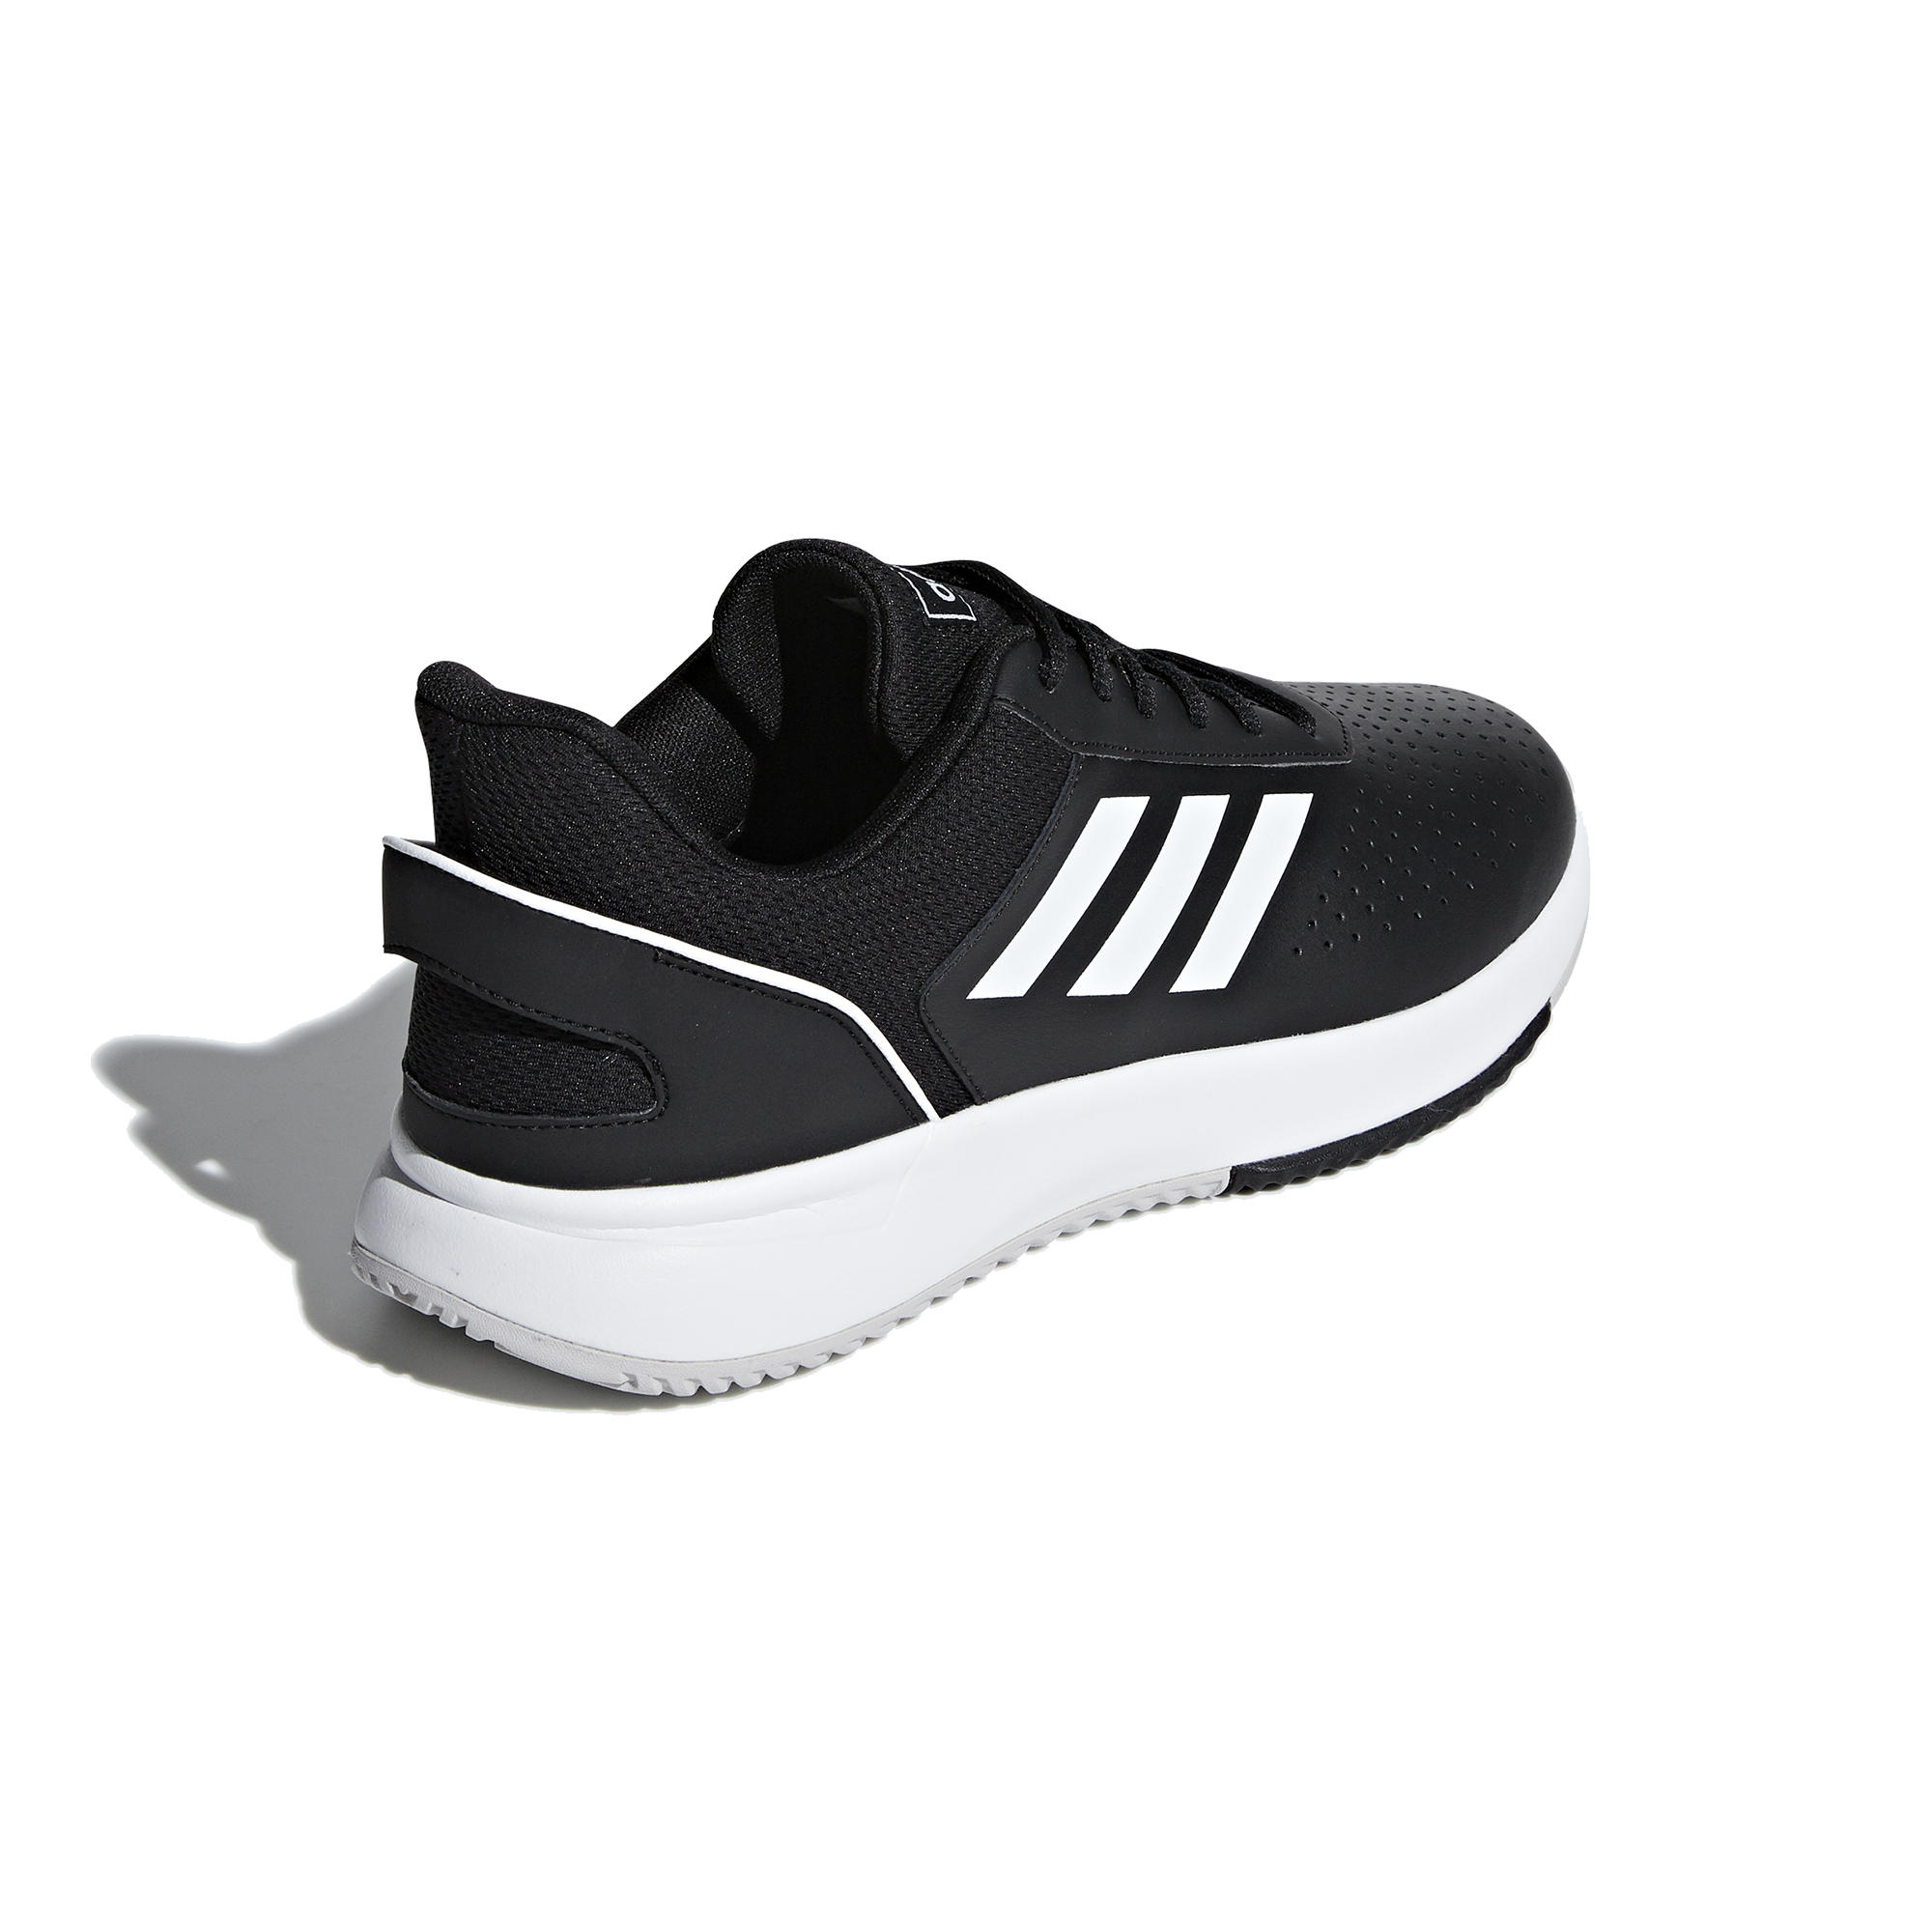 Men's Tennis Shoes Courtsmash - Black 4/9